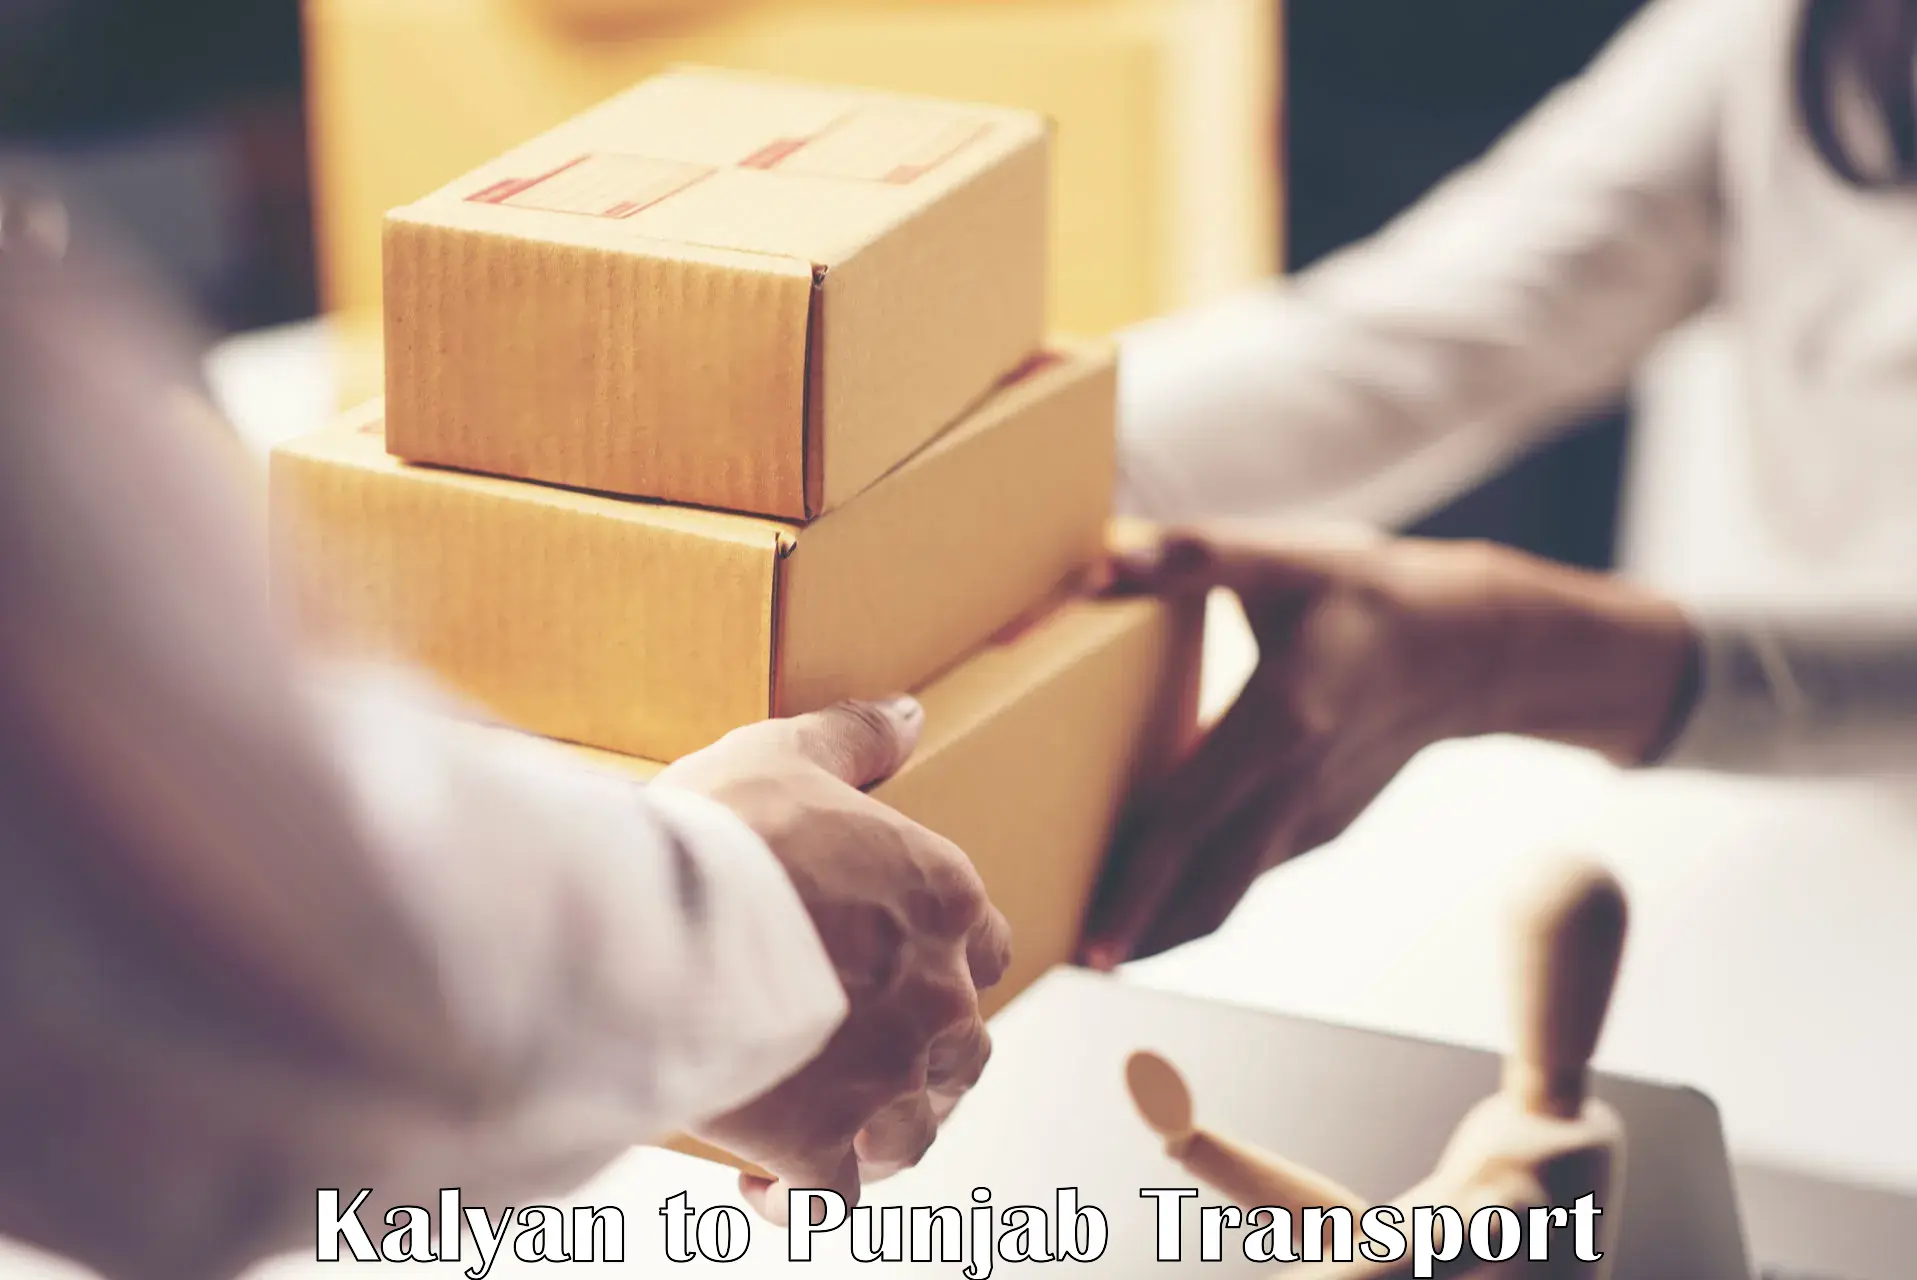 Furniture transport service Kalyan to Bathinda